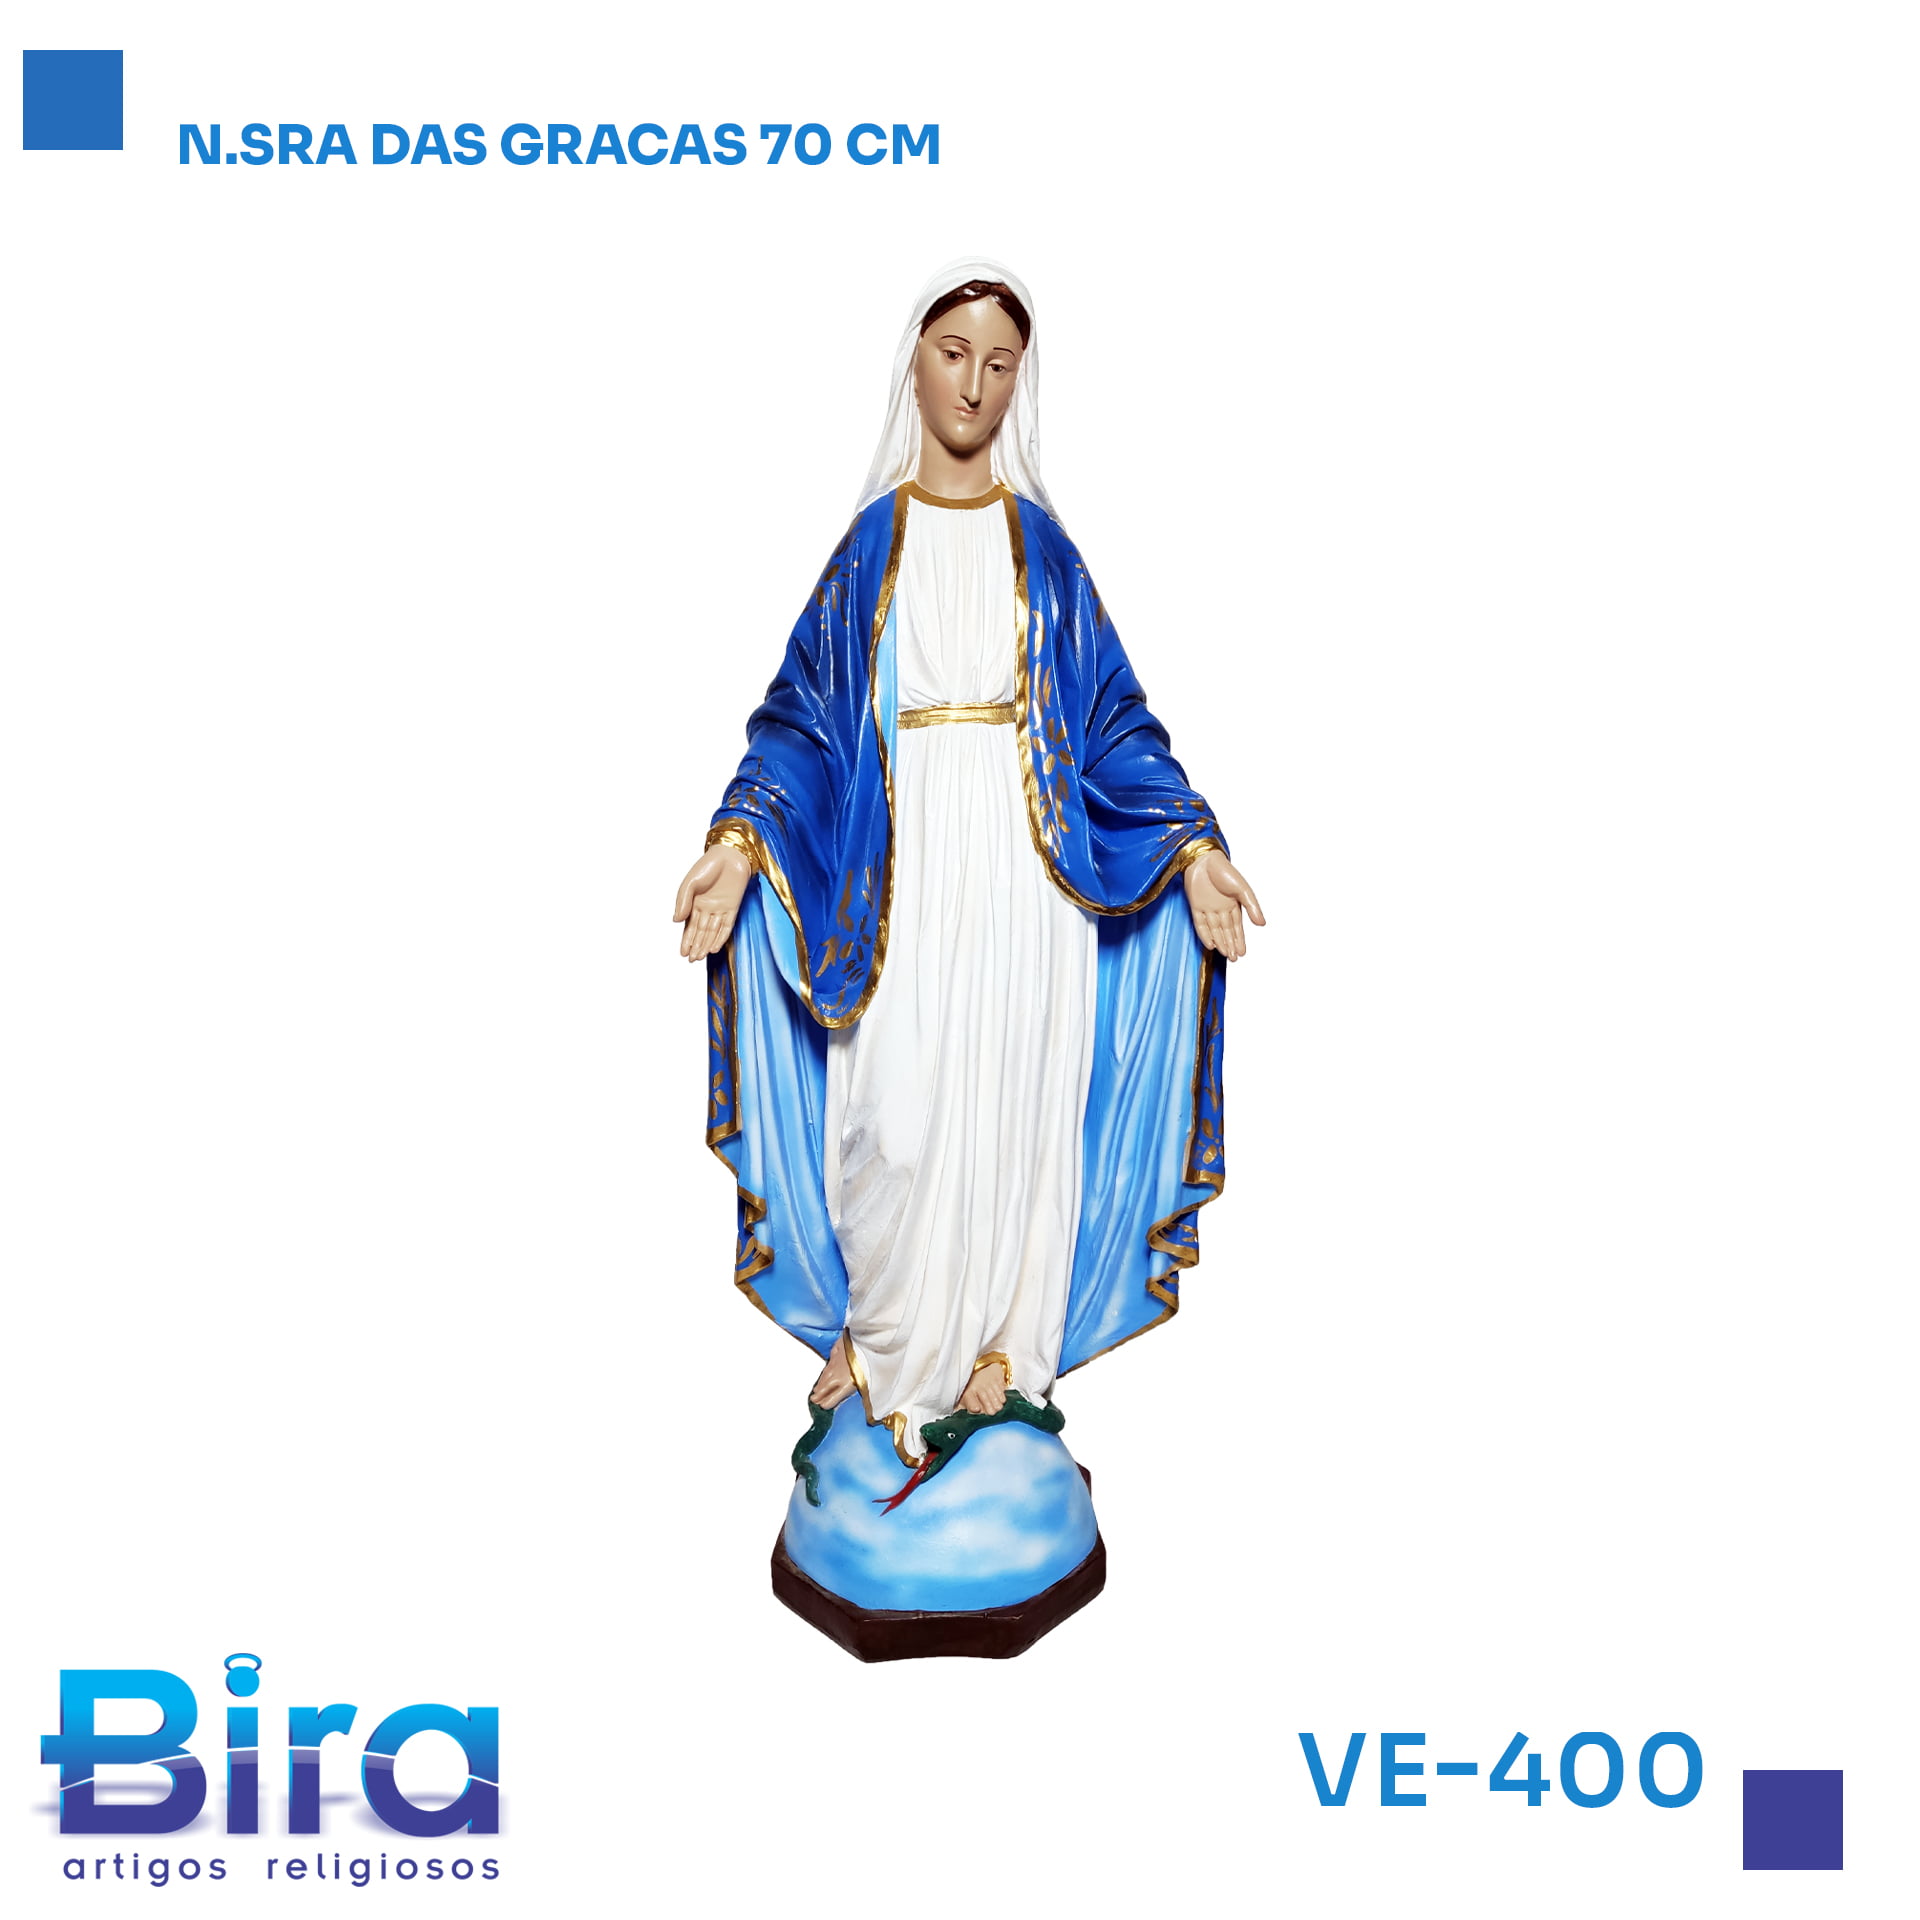 Bira Artigos Religiosos - N.SRA DAS GRACAS 70 CM CÓD.: VE-400